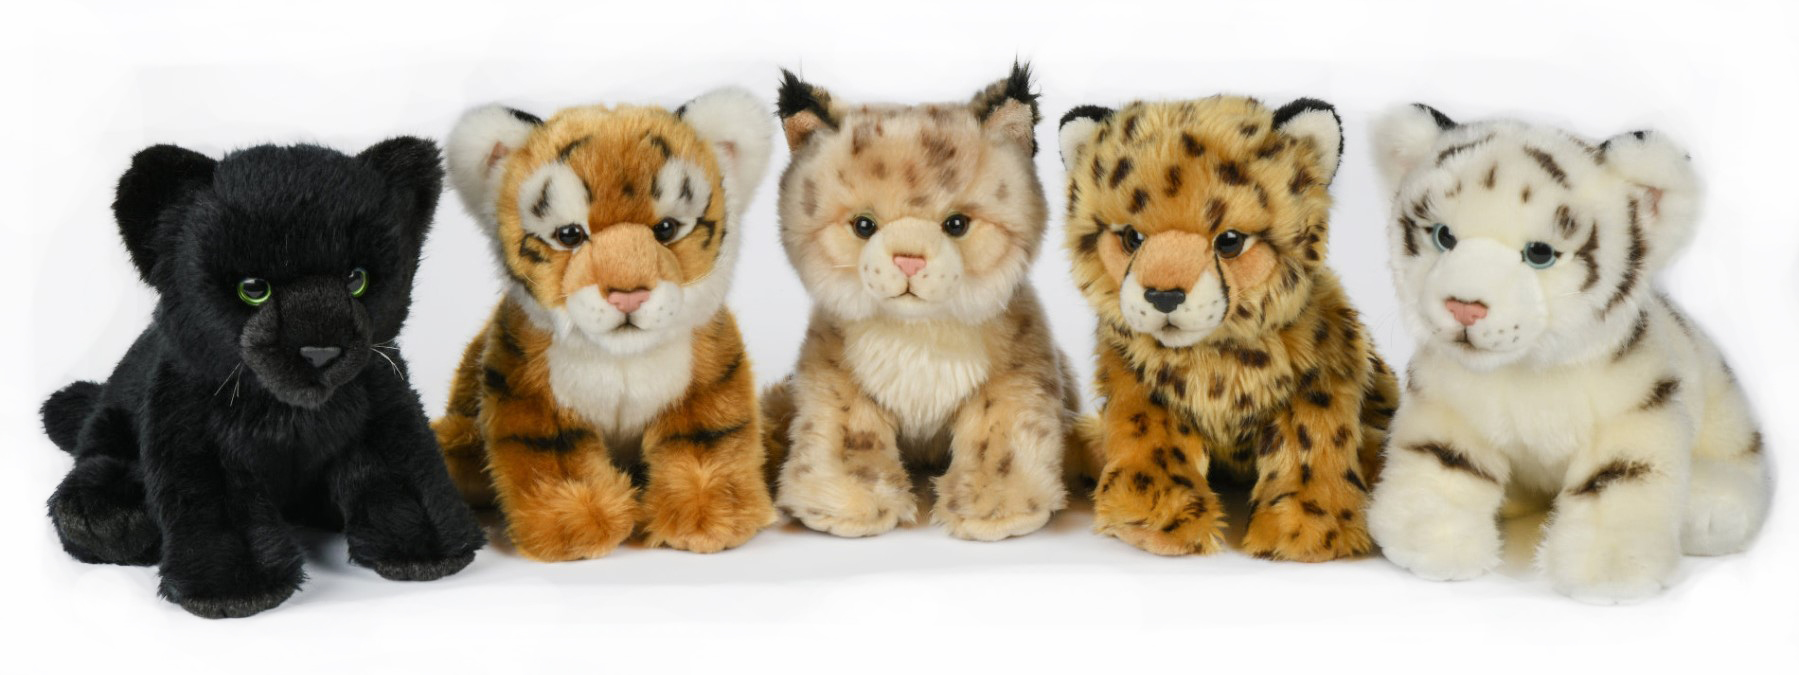 Wildtier Junges - Luchs, Gepard, Panther ODER Tiger - ca. 25 cm (Länge)